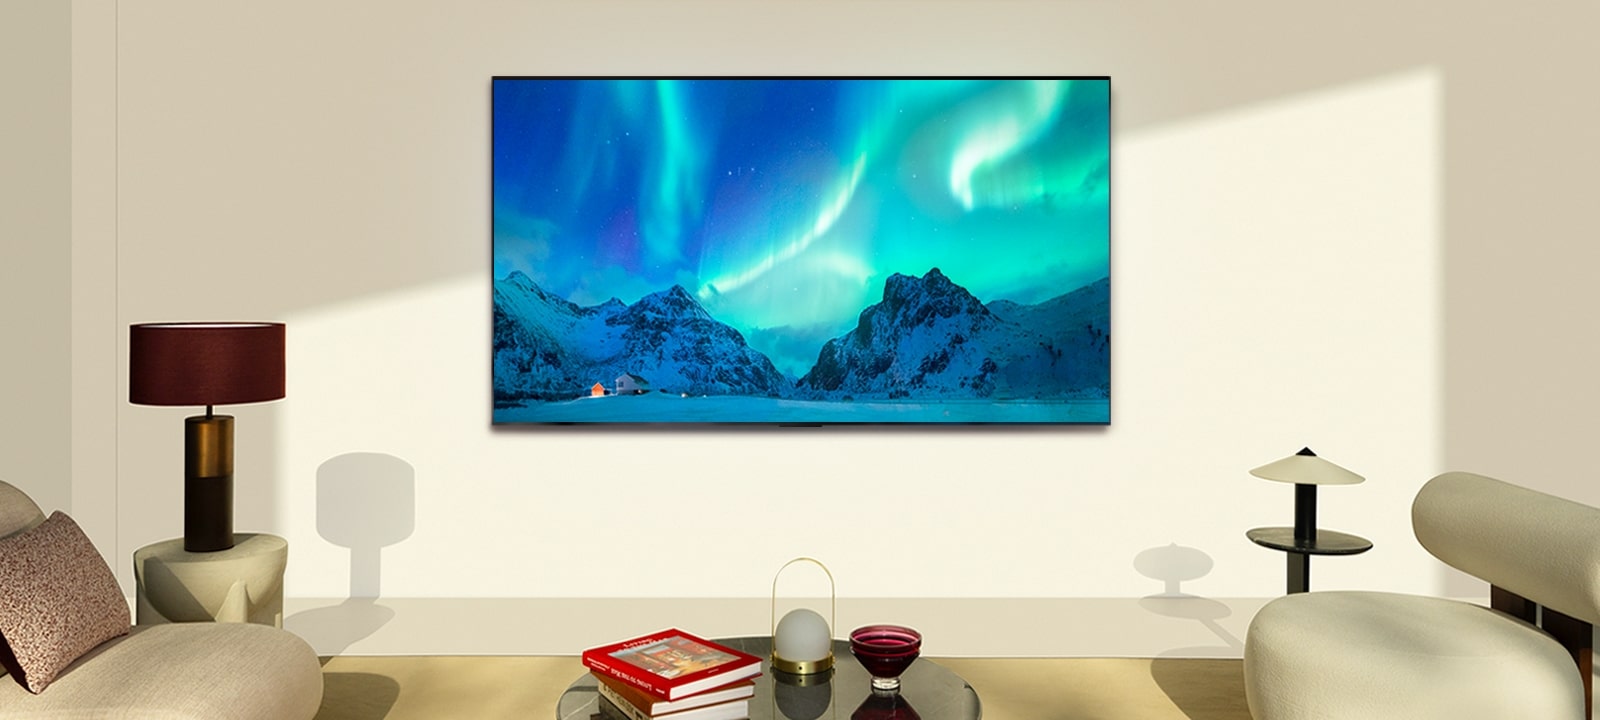 白天现代化客厅里的 LG OLED TV。屏幕以绝佳的亮度显示北极光图像。